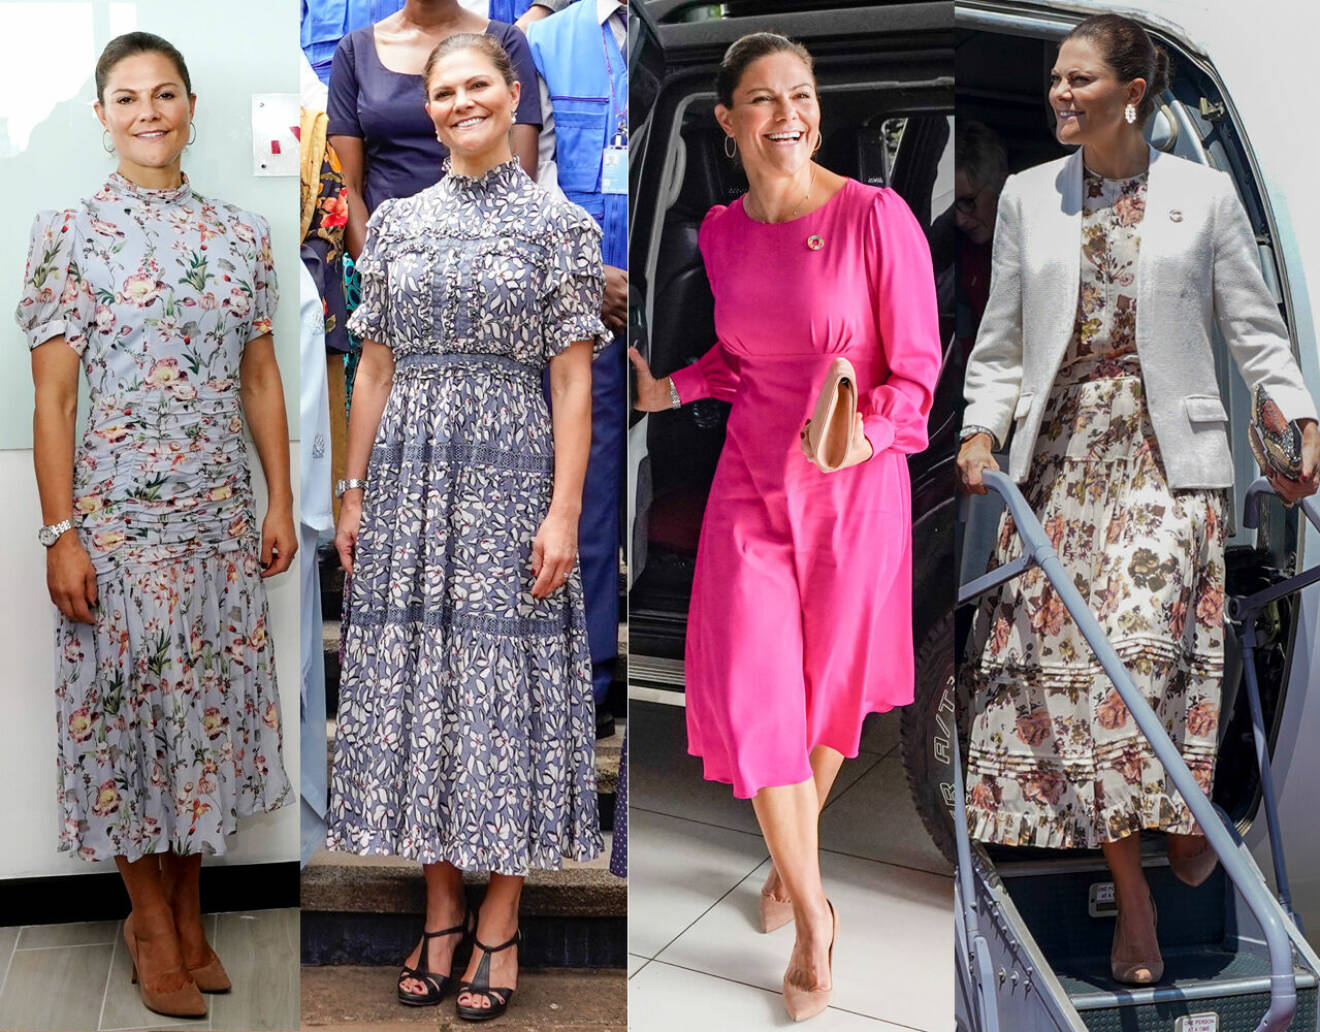 Kronprinsessan Victoria i klänningar från By Malina, Camilla Thulin och Ulla Johnson